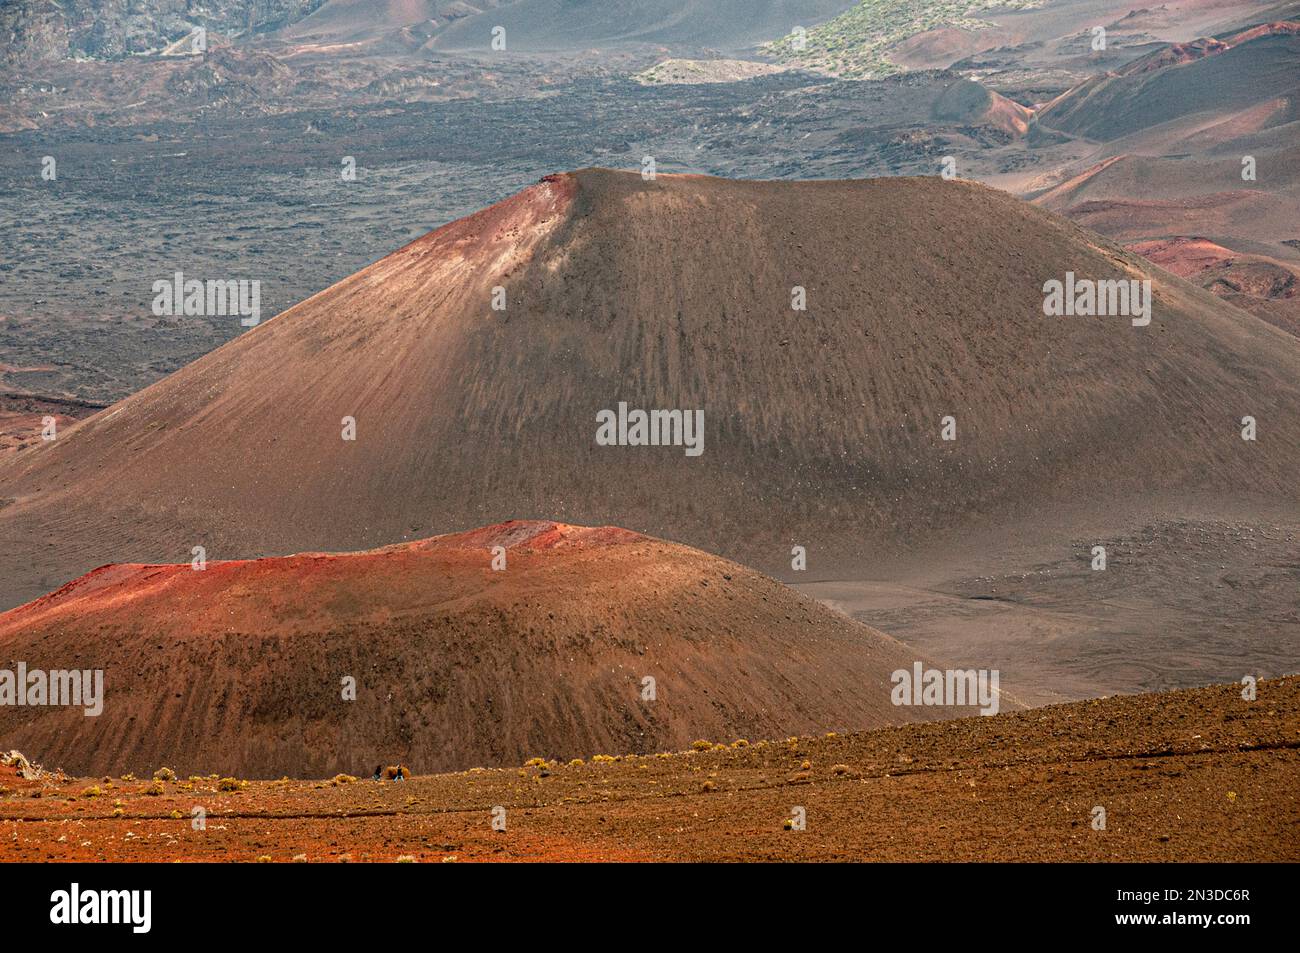 Les ascensions volcaniques se situent dans le cratère principal du parc national de Haleakala sur l'île de Maui ; Maui, Hawaï, États-Unis d'Amérique Banque D'Images